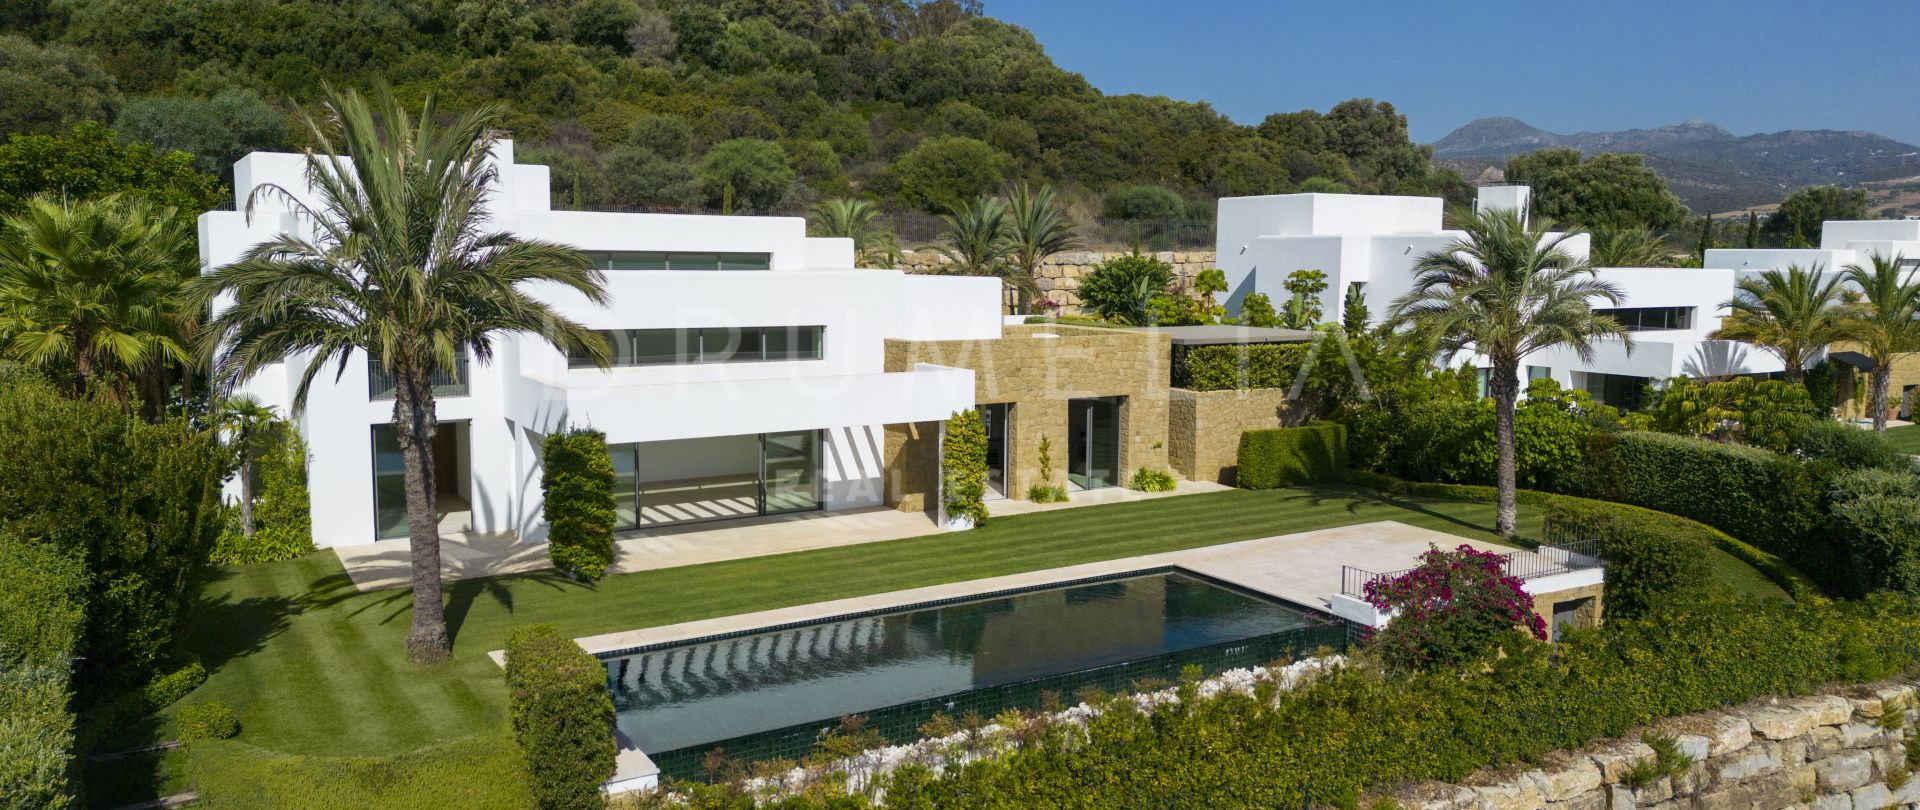 Splitter ny luksusvilla i frontlinjen med fantastisk utsikt og Ibiza-sjarm, Finca Cortesin, Casares.